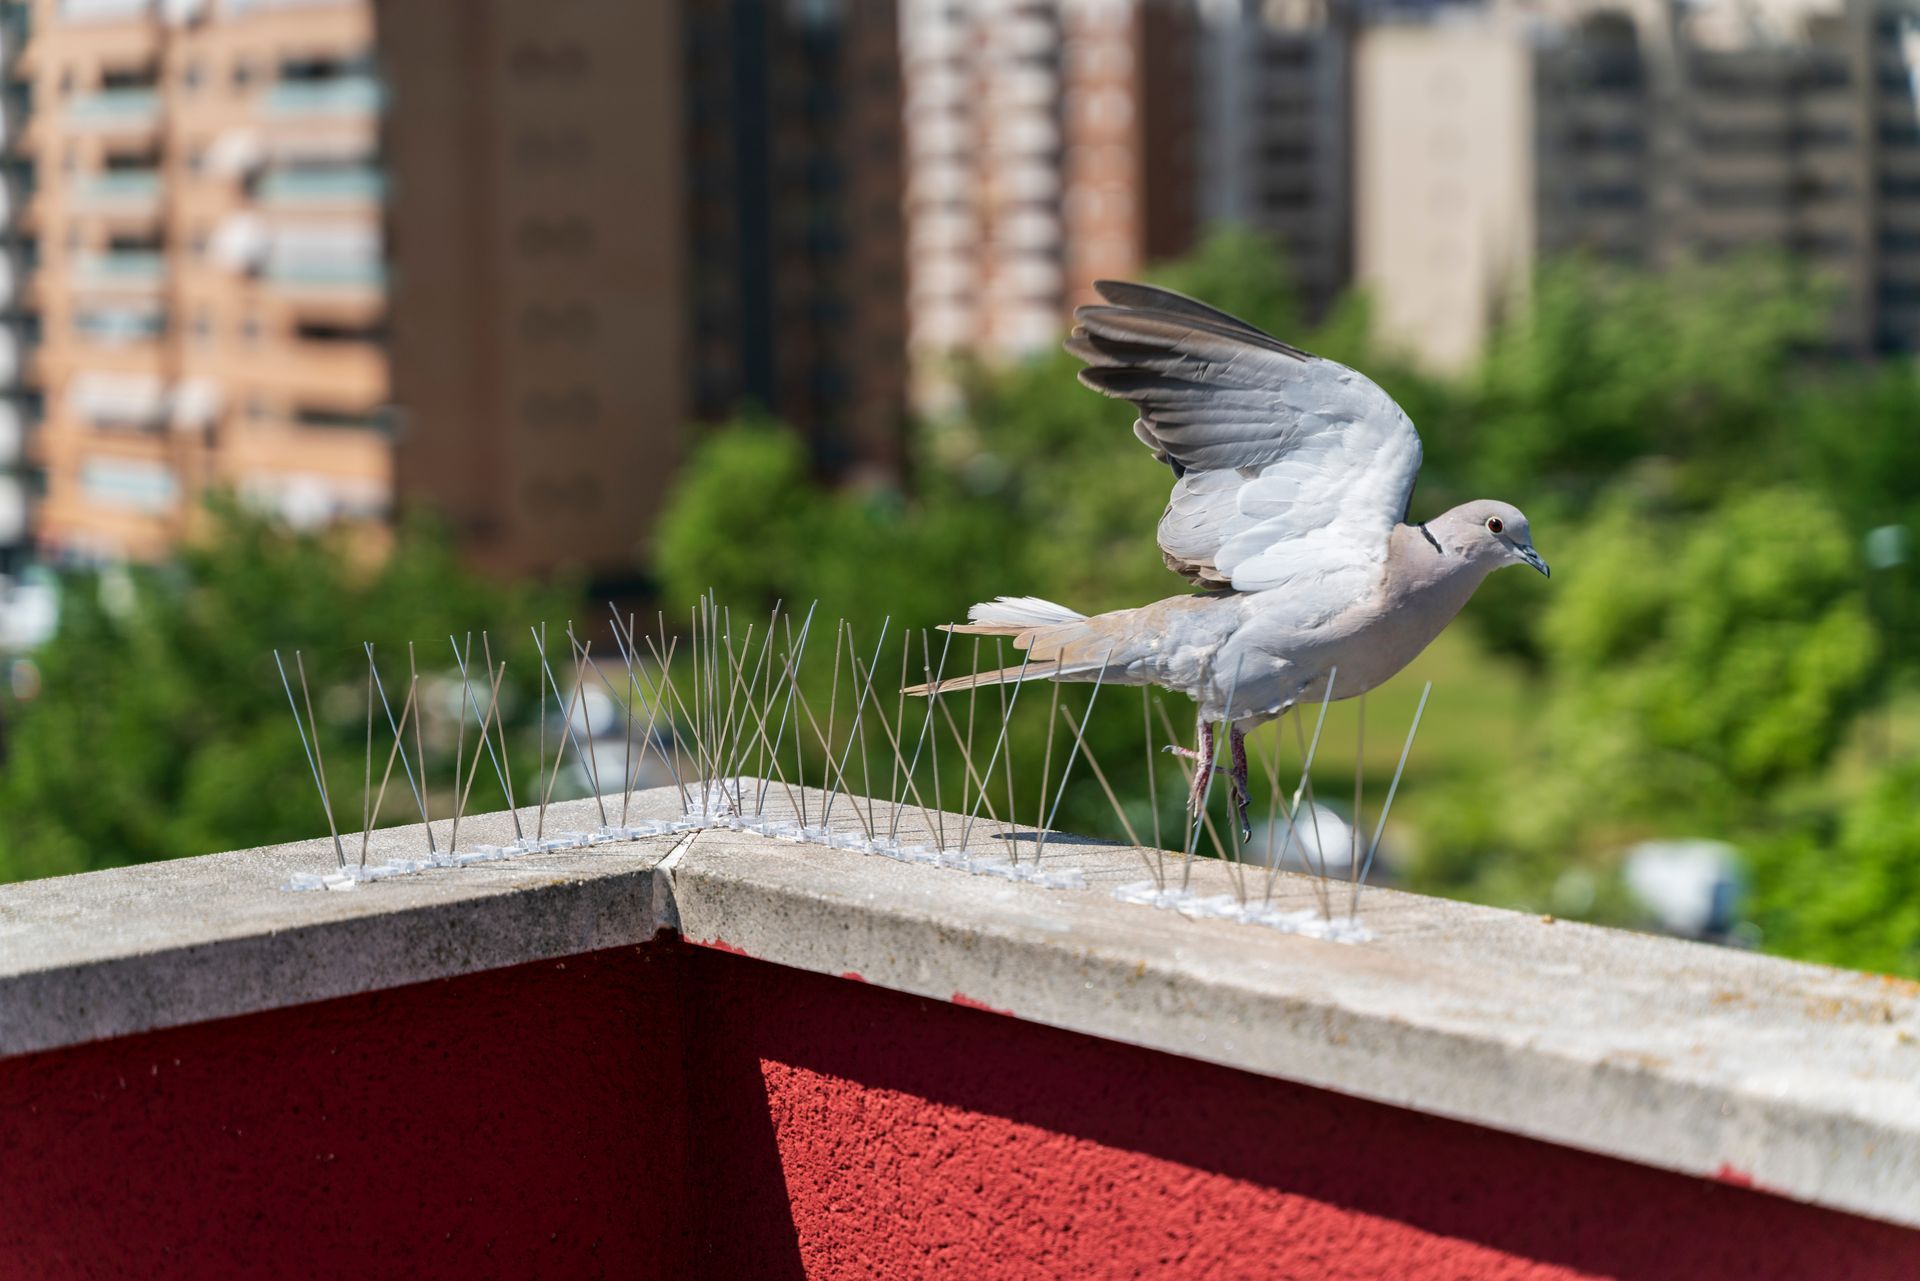 Un pigeon qui s'envole à côté de pics sur un bord de toit